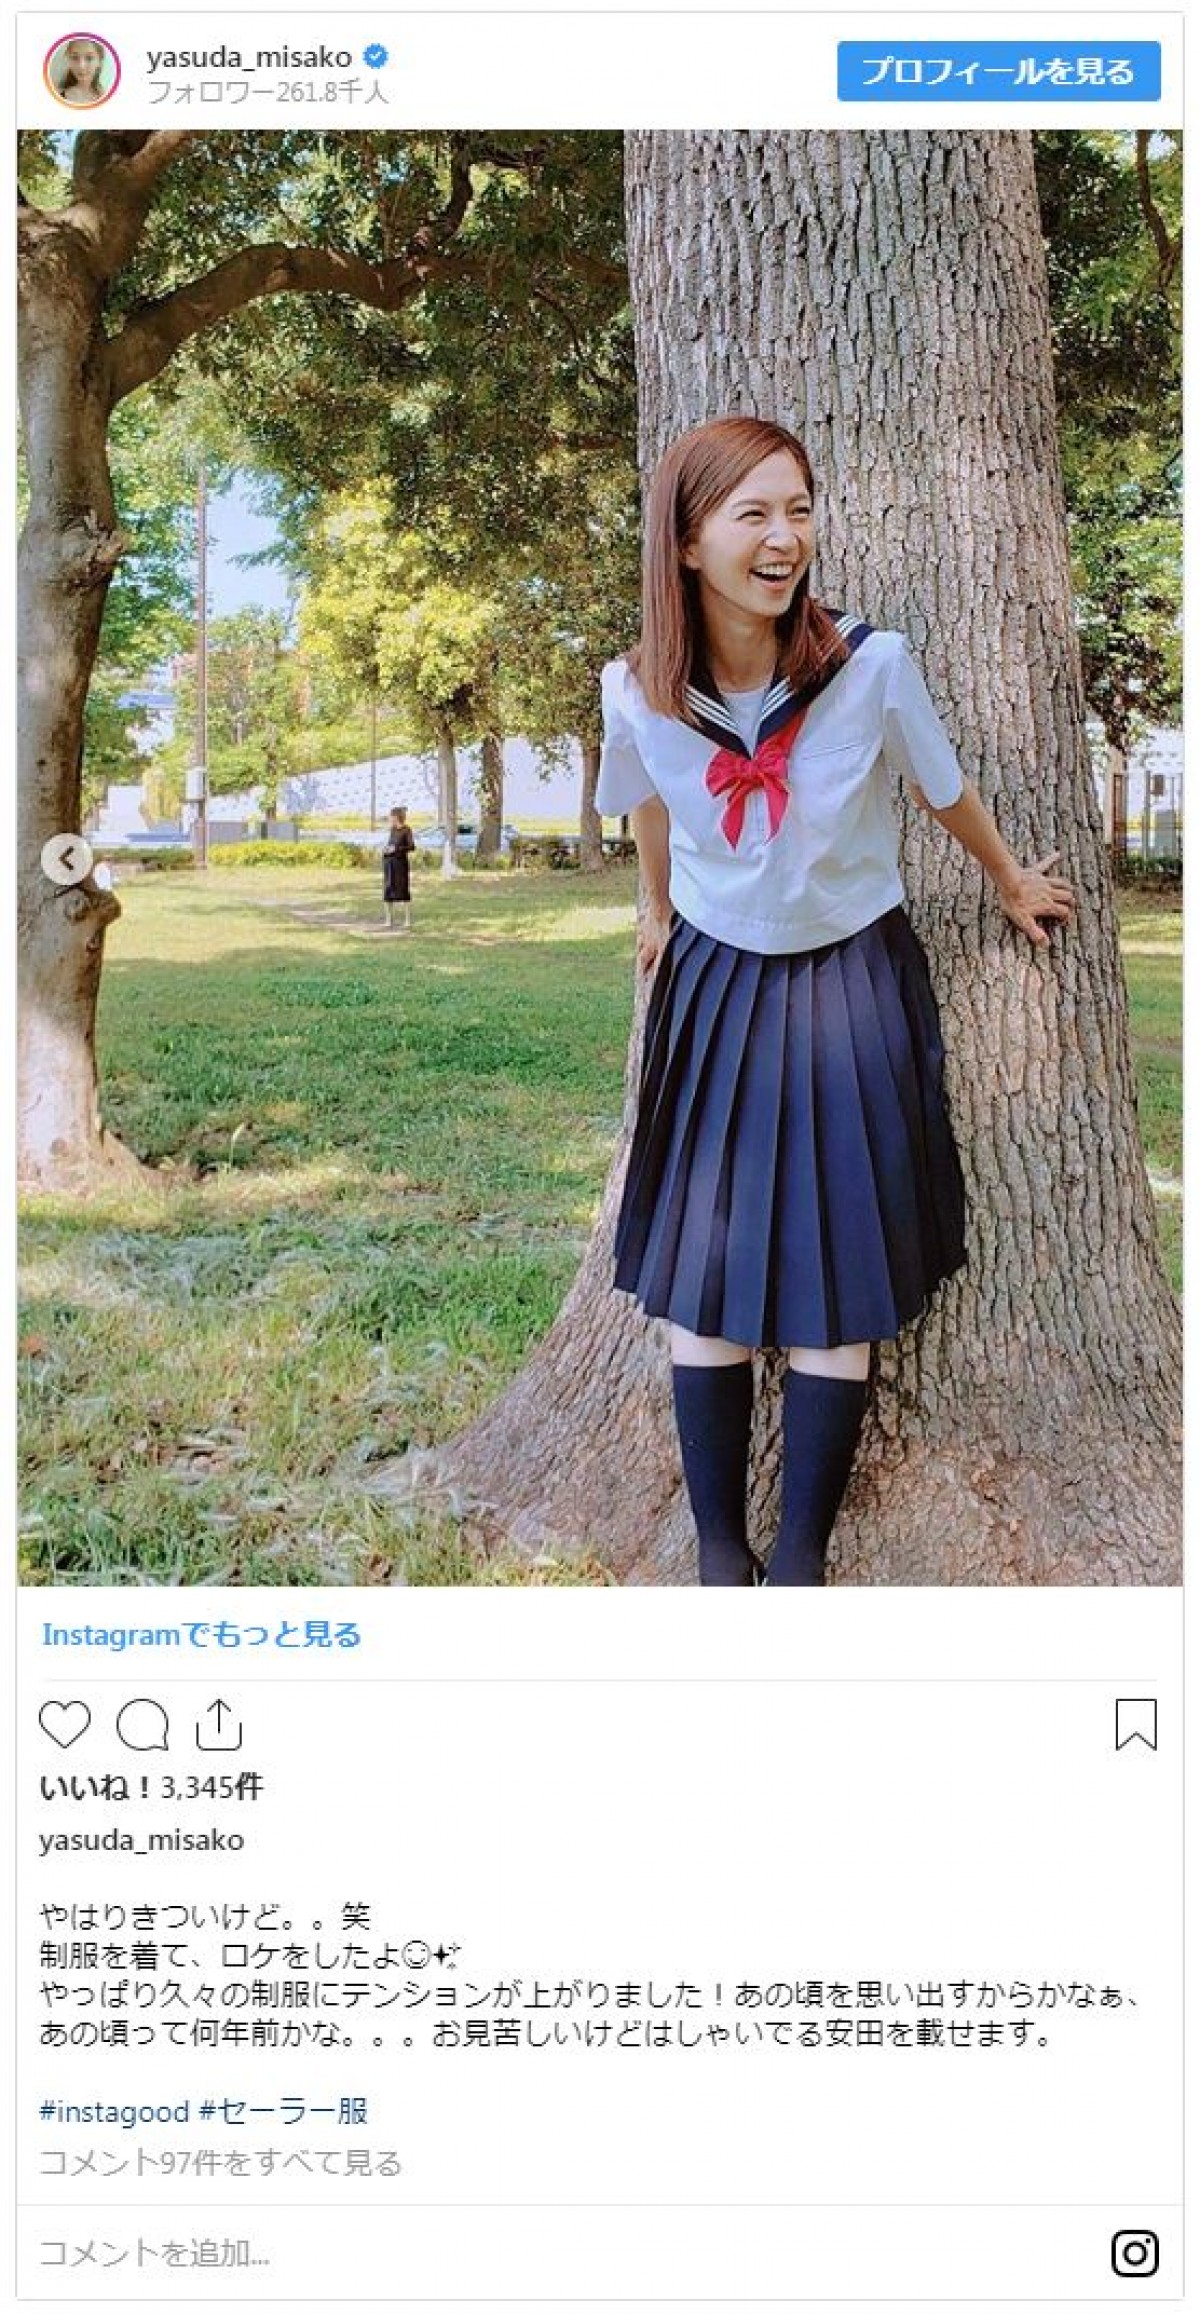 安田美沙子、セーラー服姿 「きつい」と自虐もファン「違和感ない」